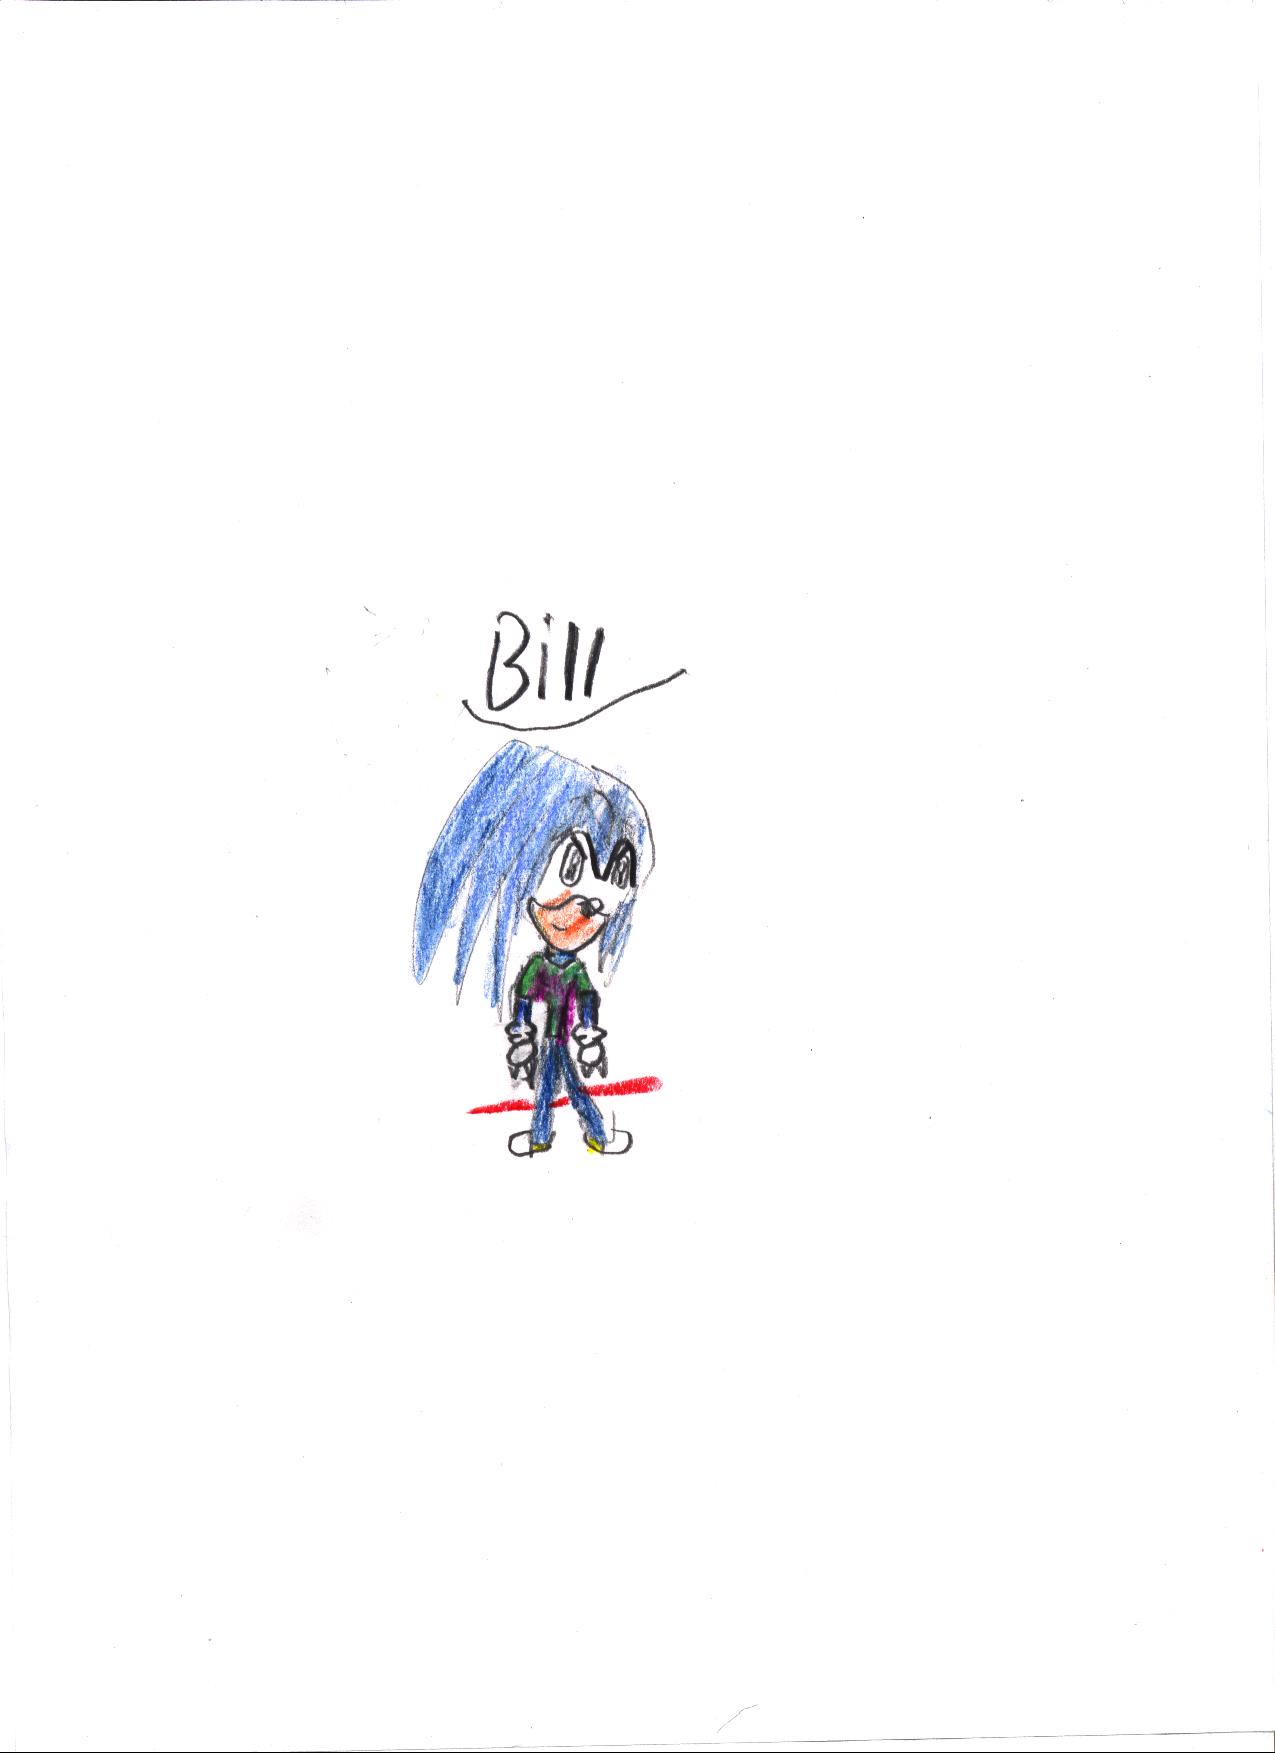 Bill by Smoe